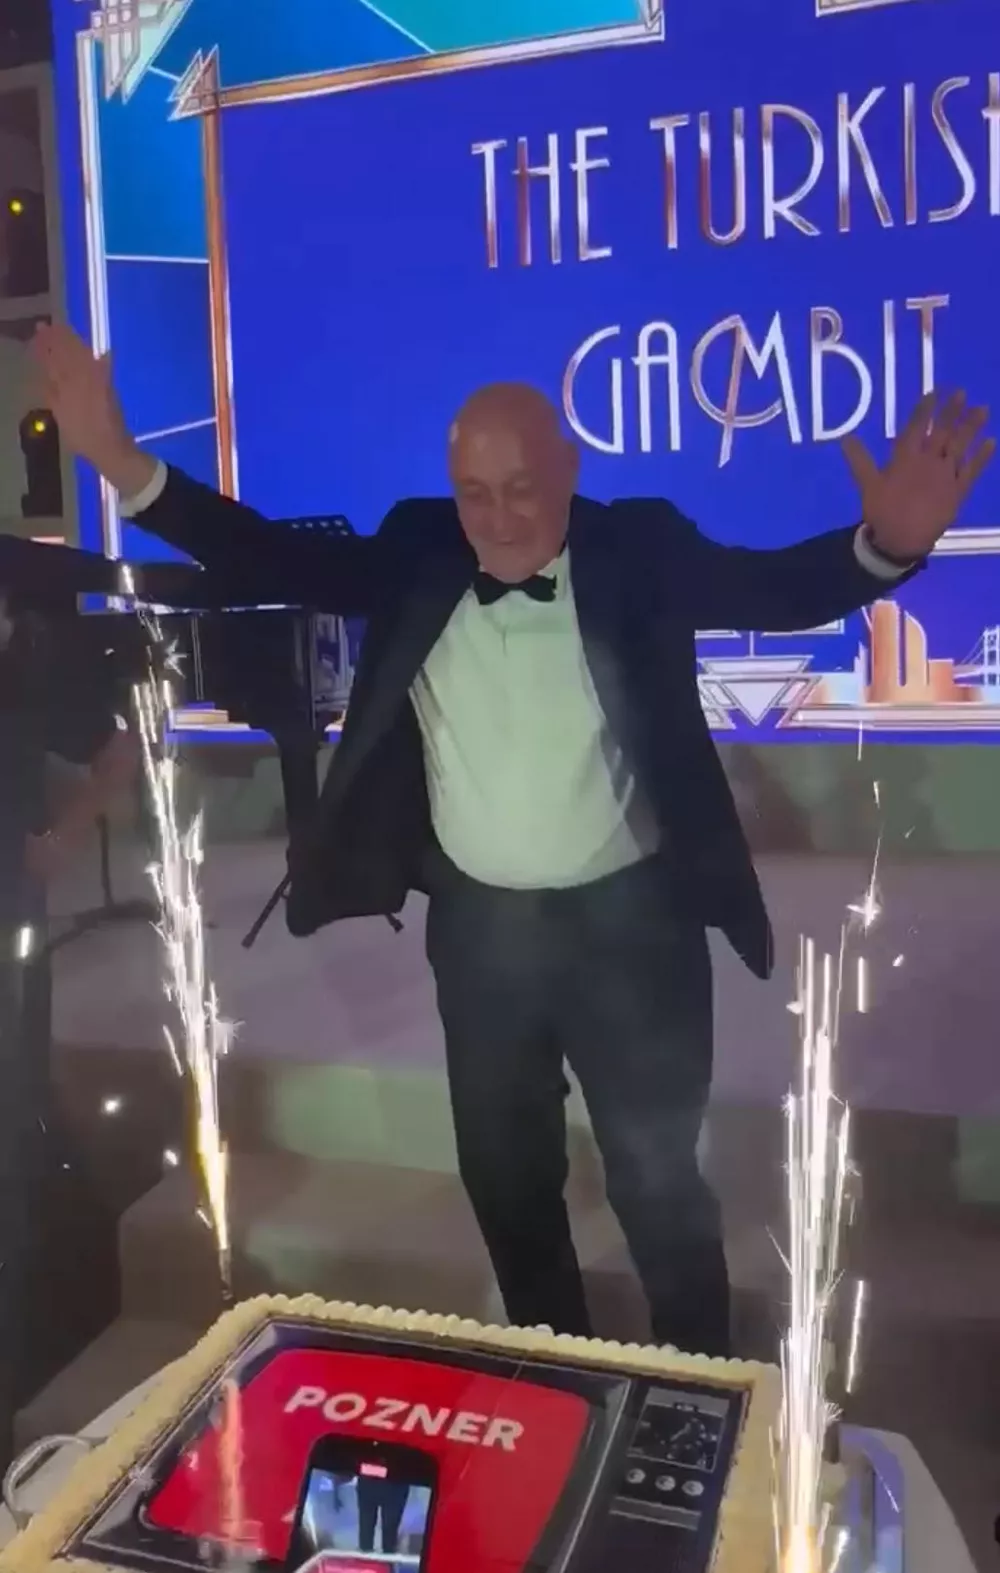 Владимир Познер во время празднования kkiqqqidrrixatf queiueiqudiqrhkrt